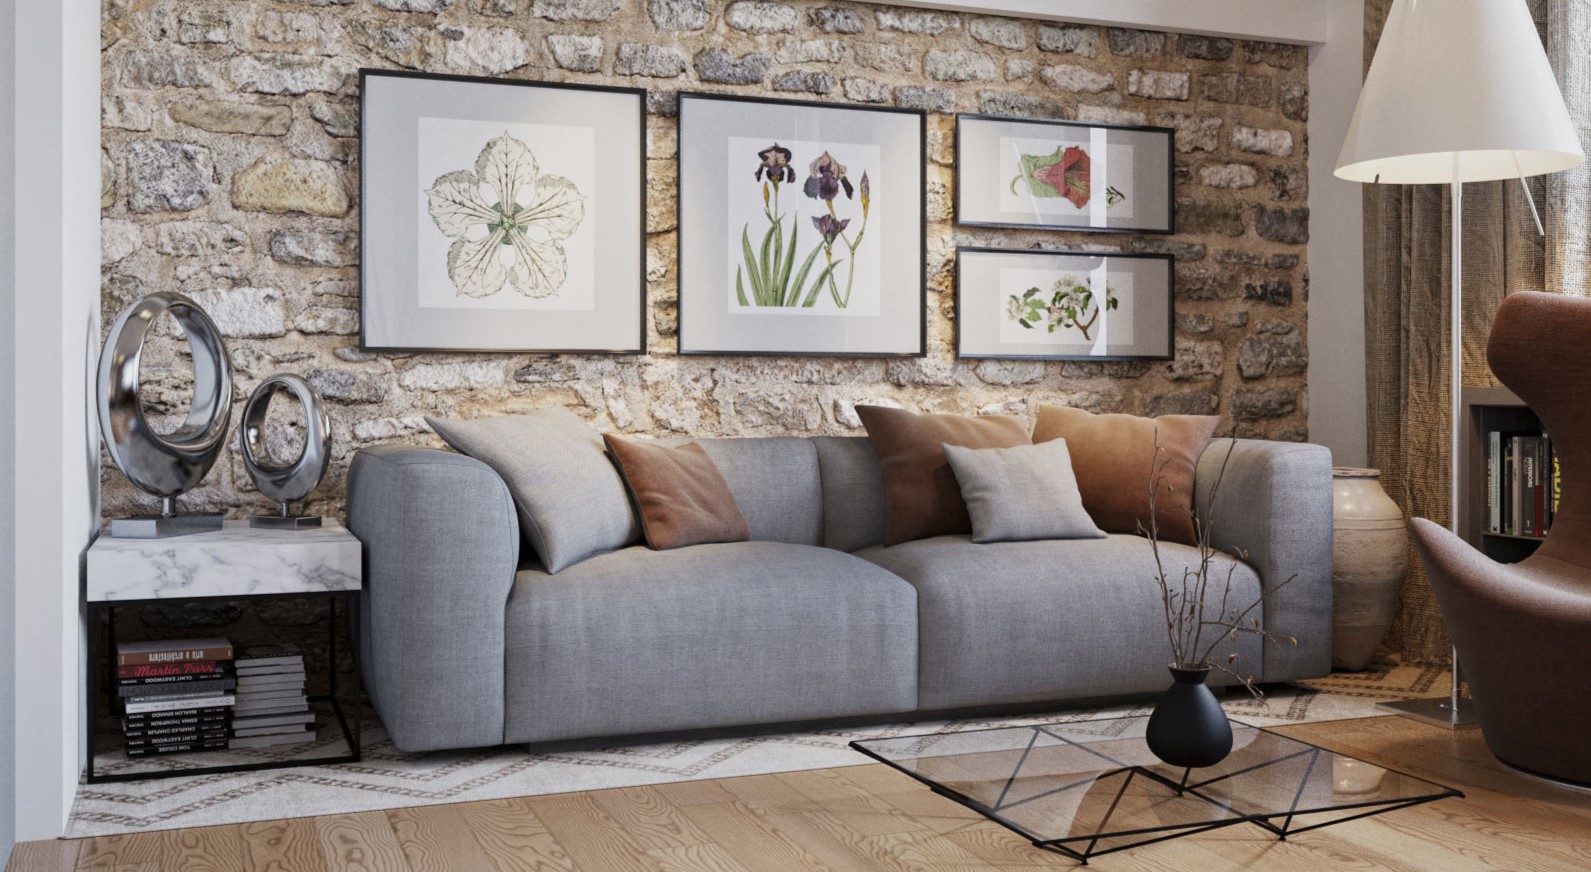 Серый диван можно дополнить коричневыми подушками, которые перекликаются с другими интерьерными элементами